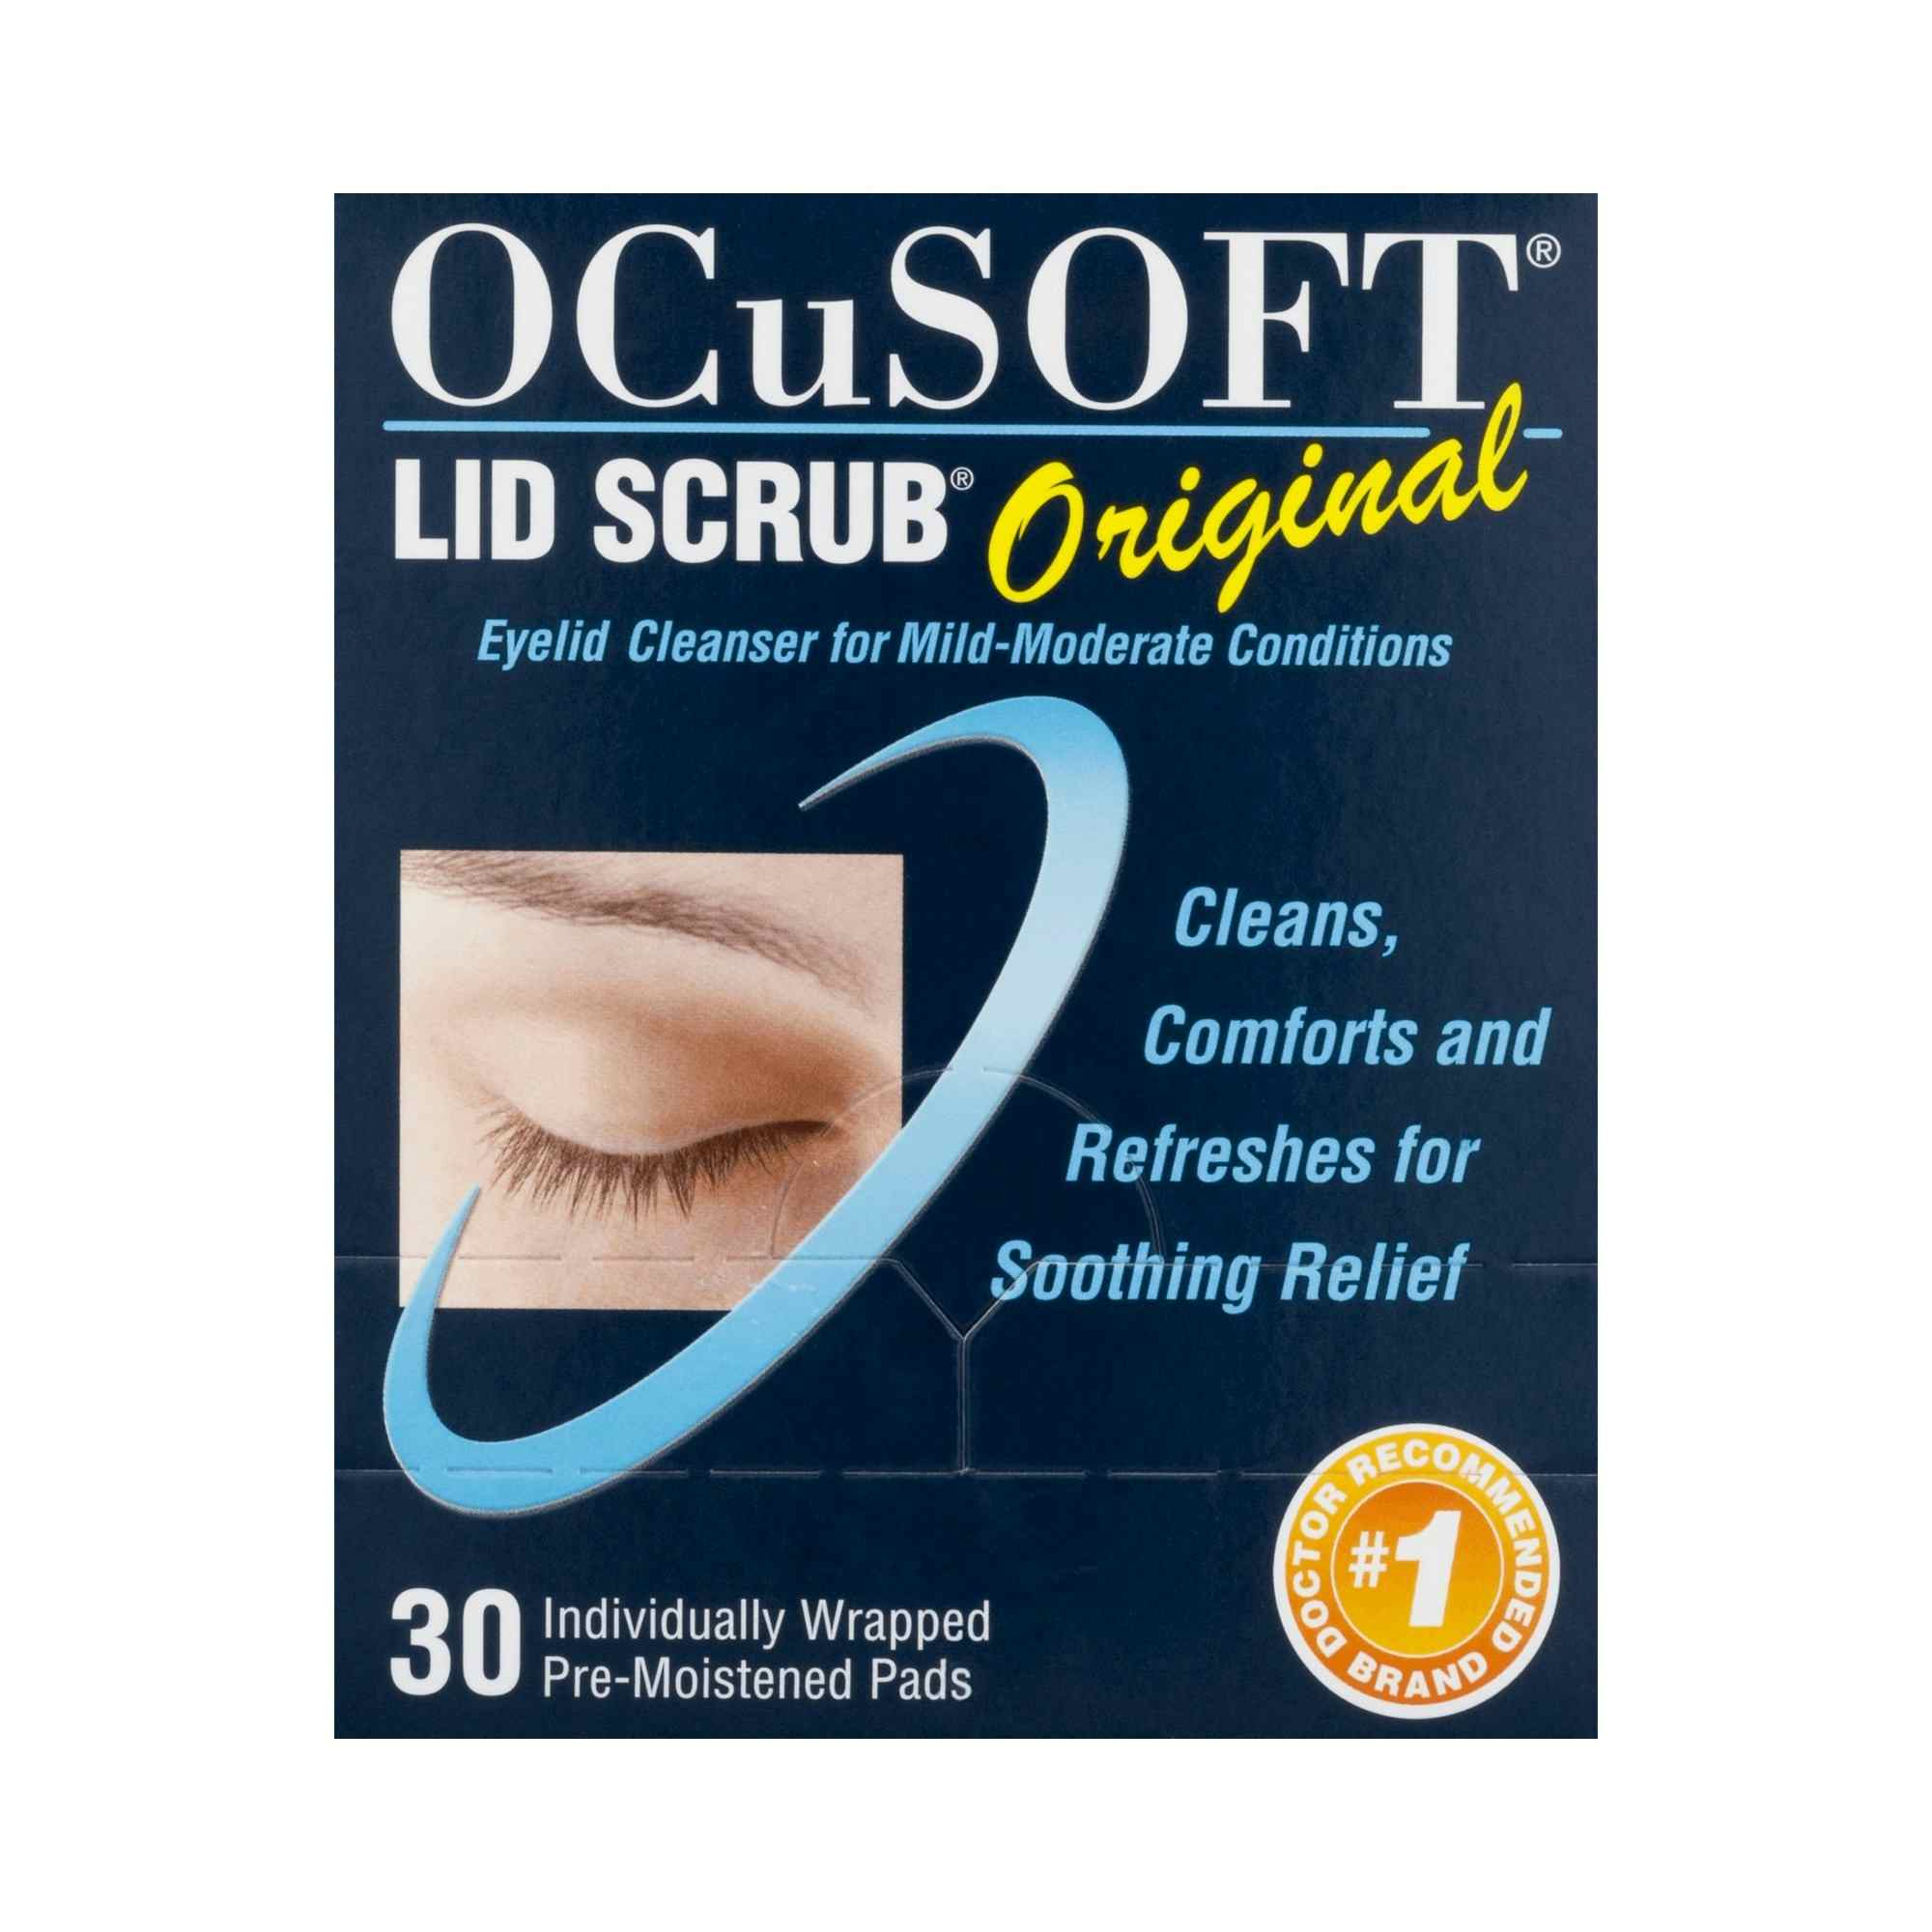 OCuSOFT Lid Scrub Eyelid Cleanser Wipes, 54799030190, Box of 30